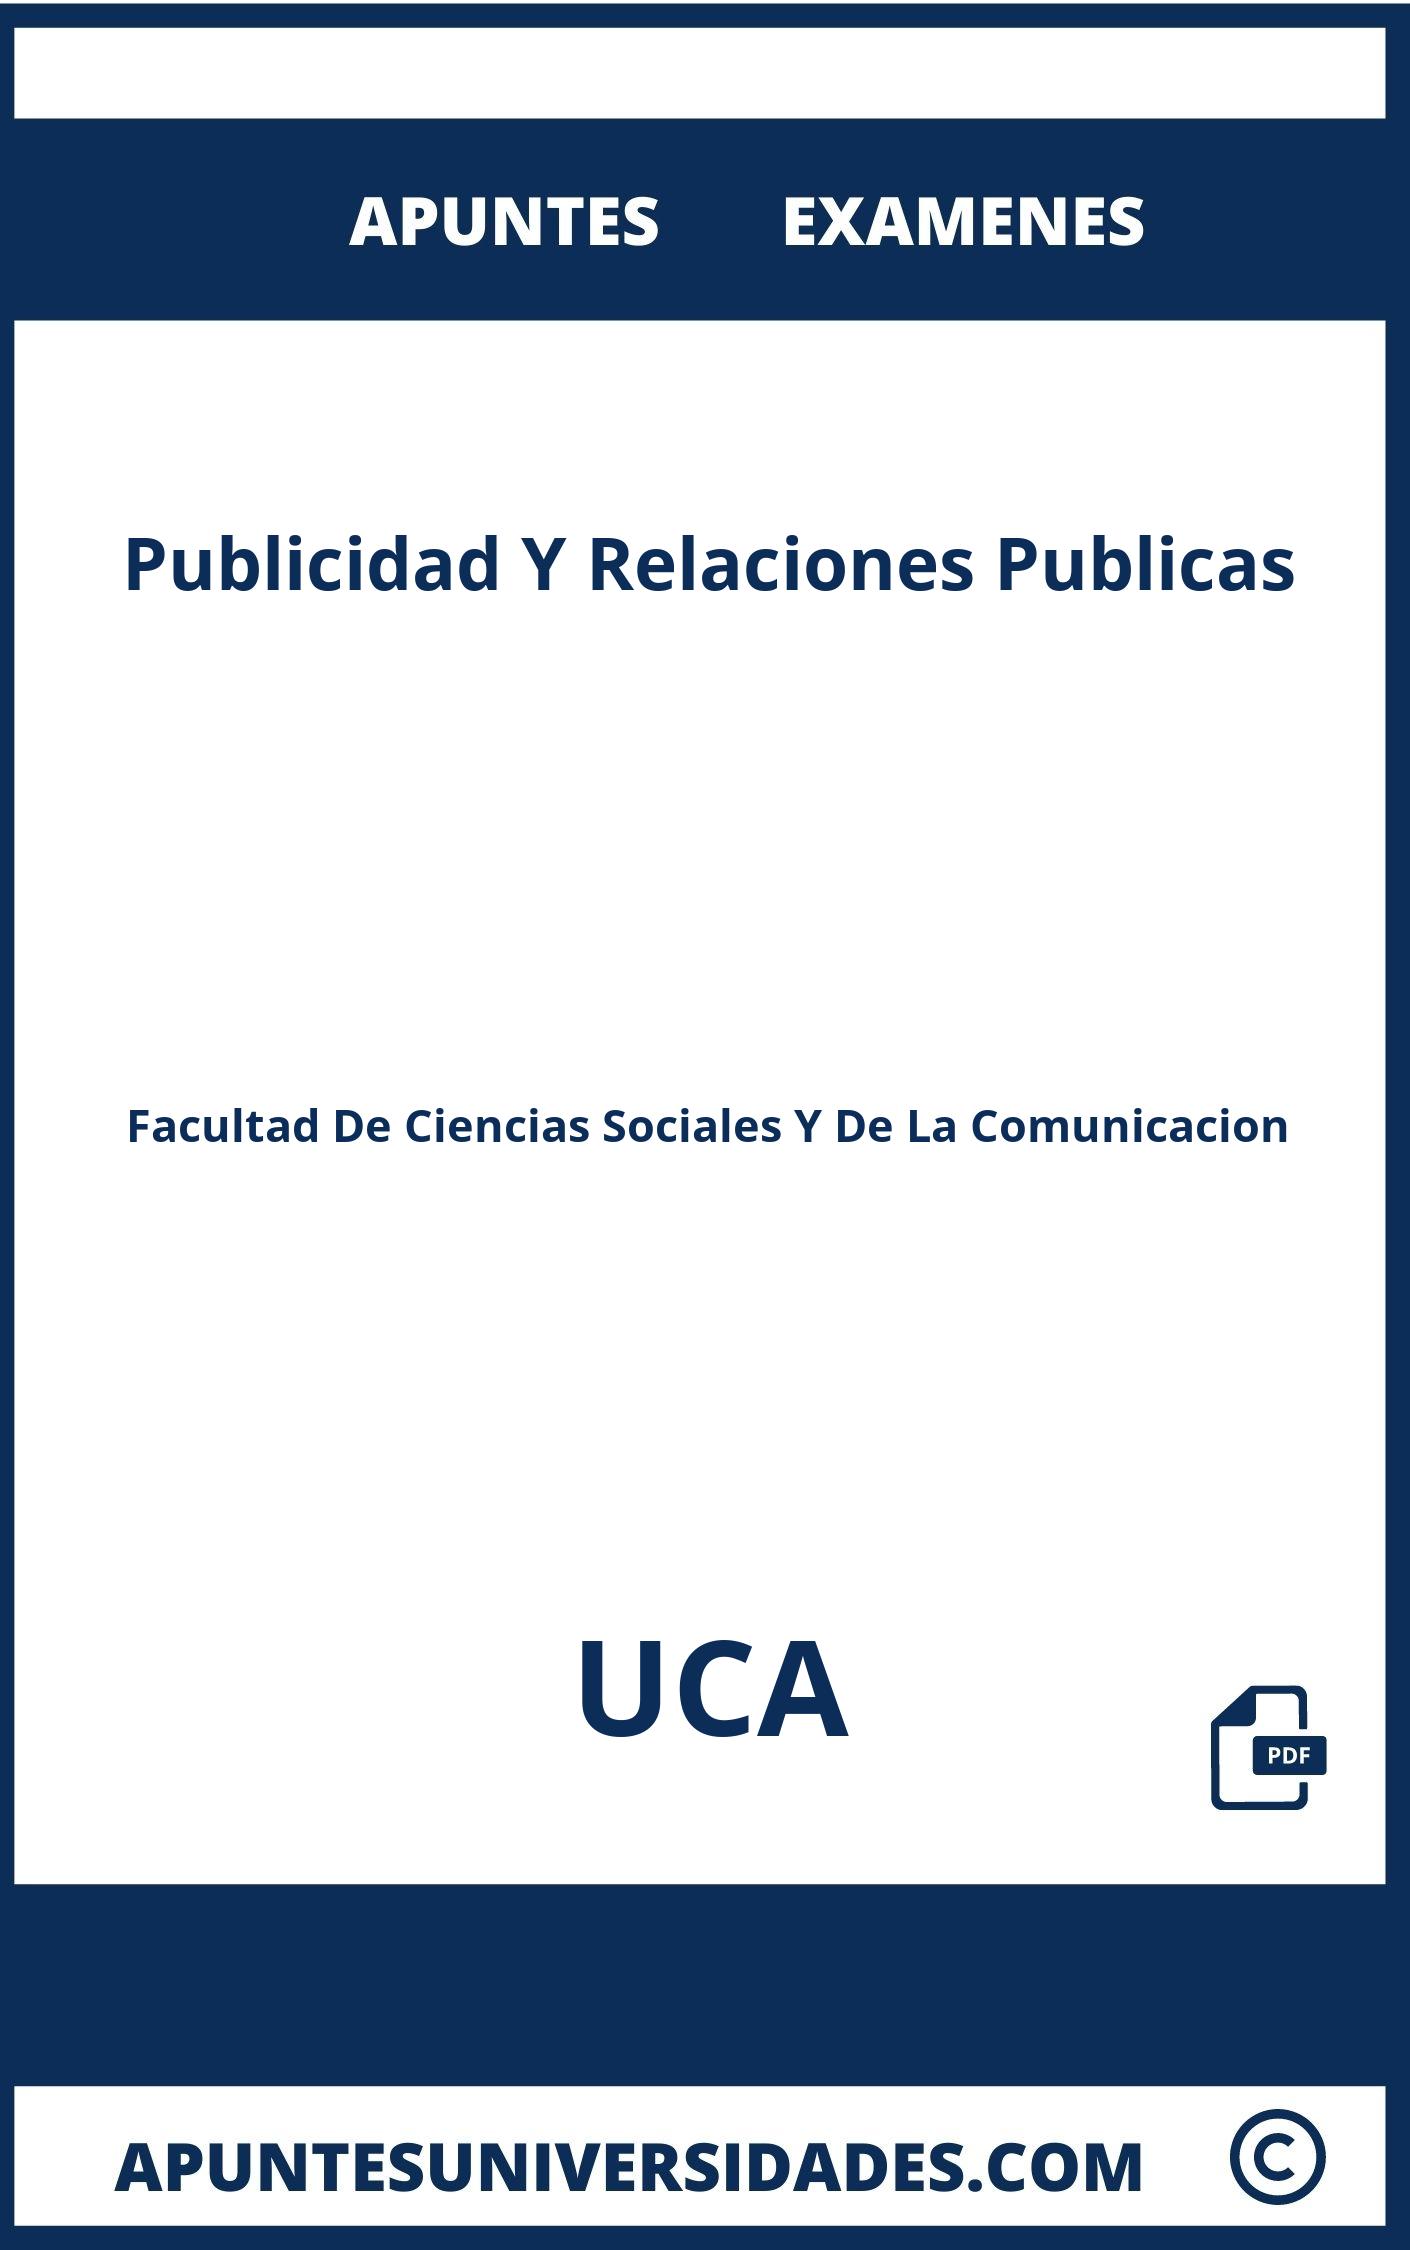 Publicidad Y Relaciones Publicas UCA Examenes Apuntes